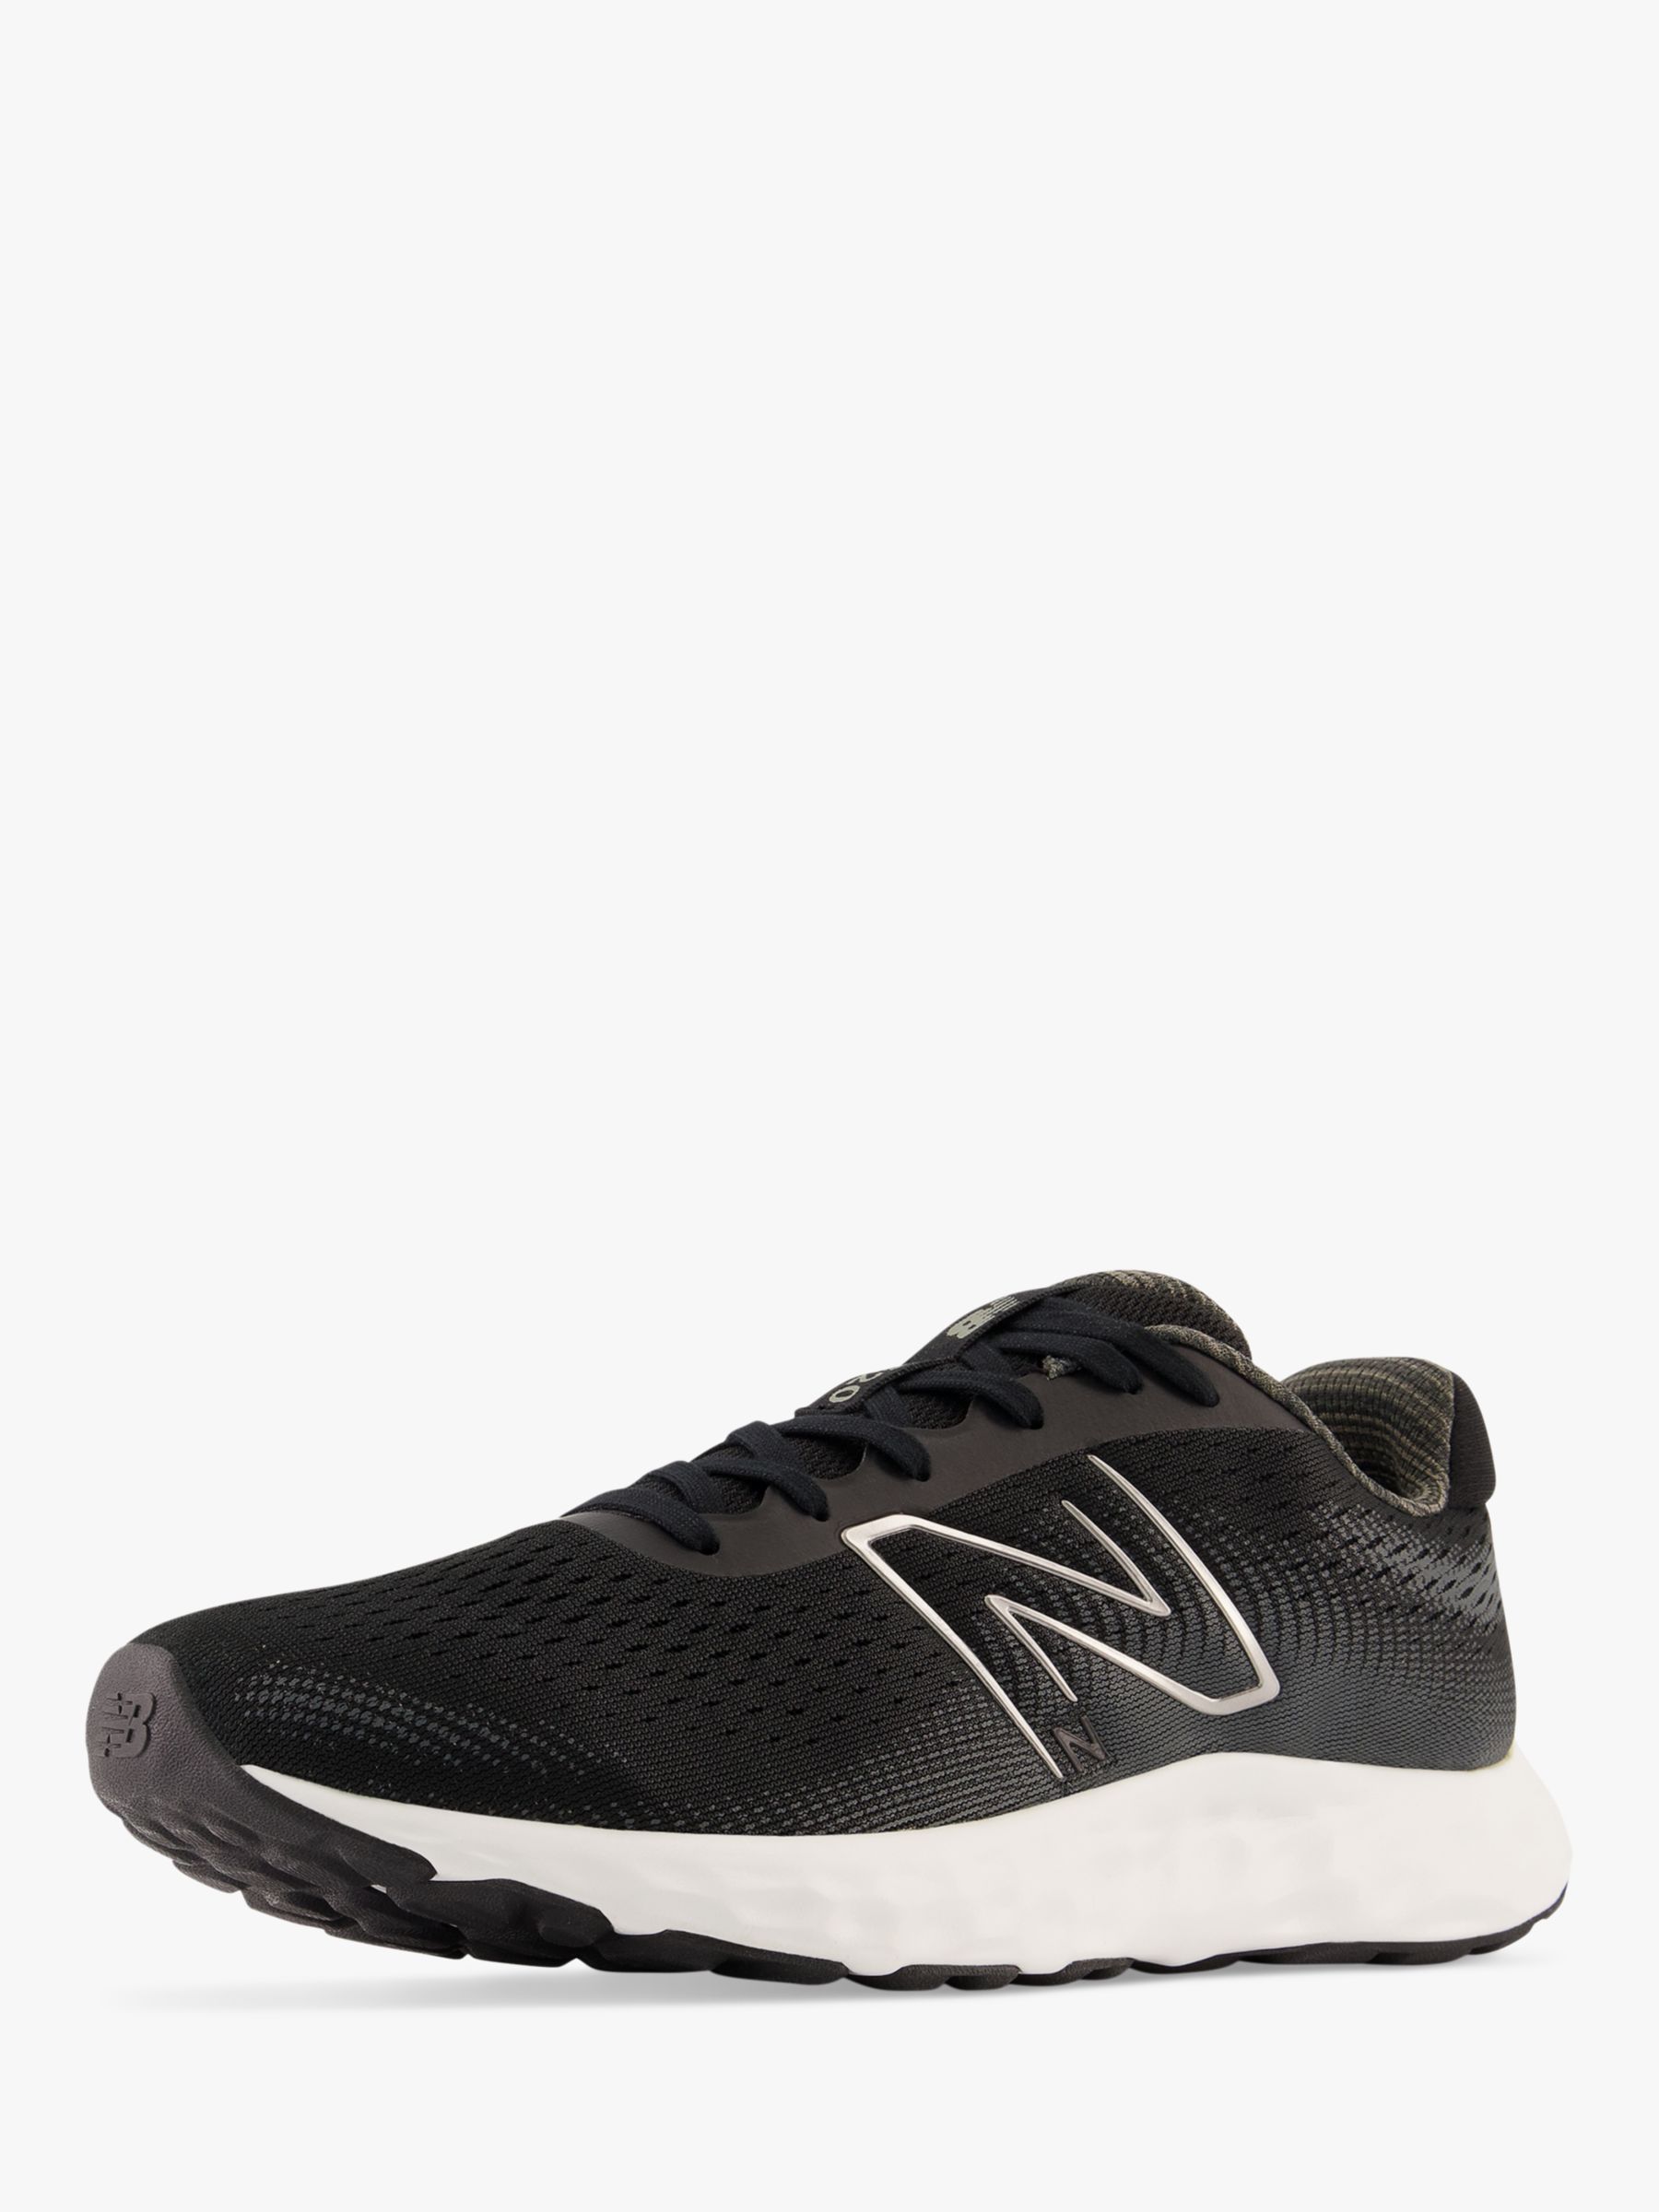 New Balance 520v8 Men's Running Shoes, Black/White at John Lewis & Partners